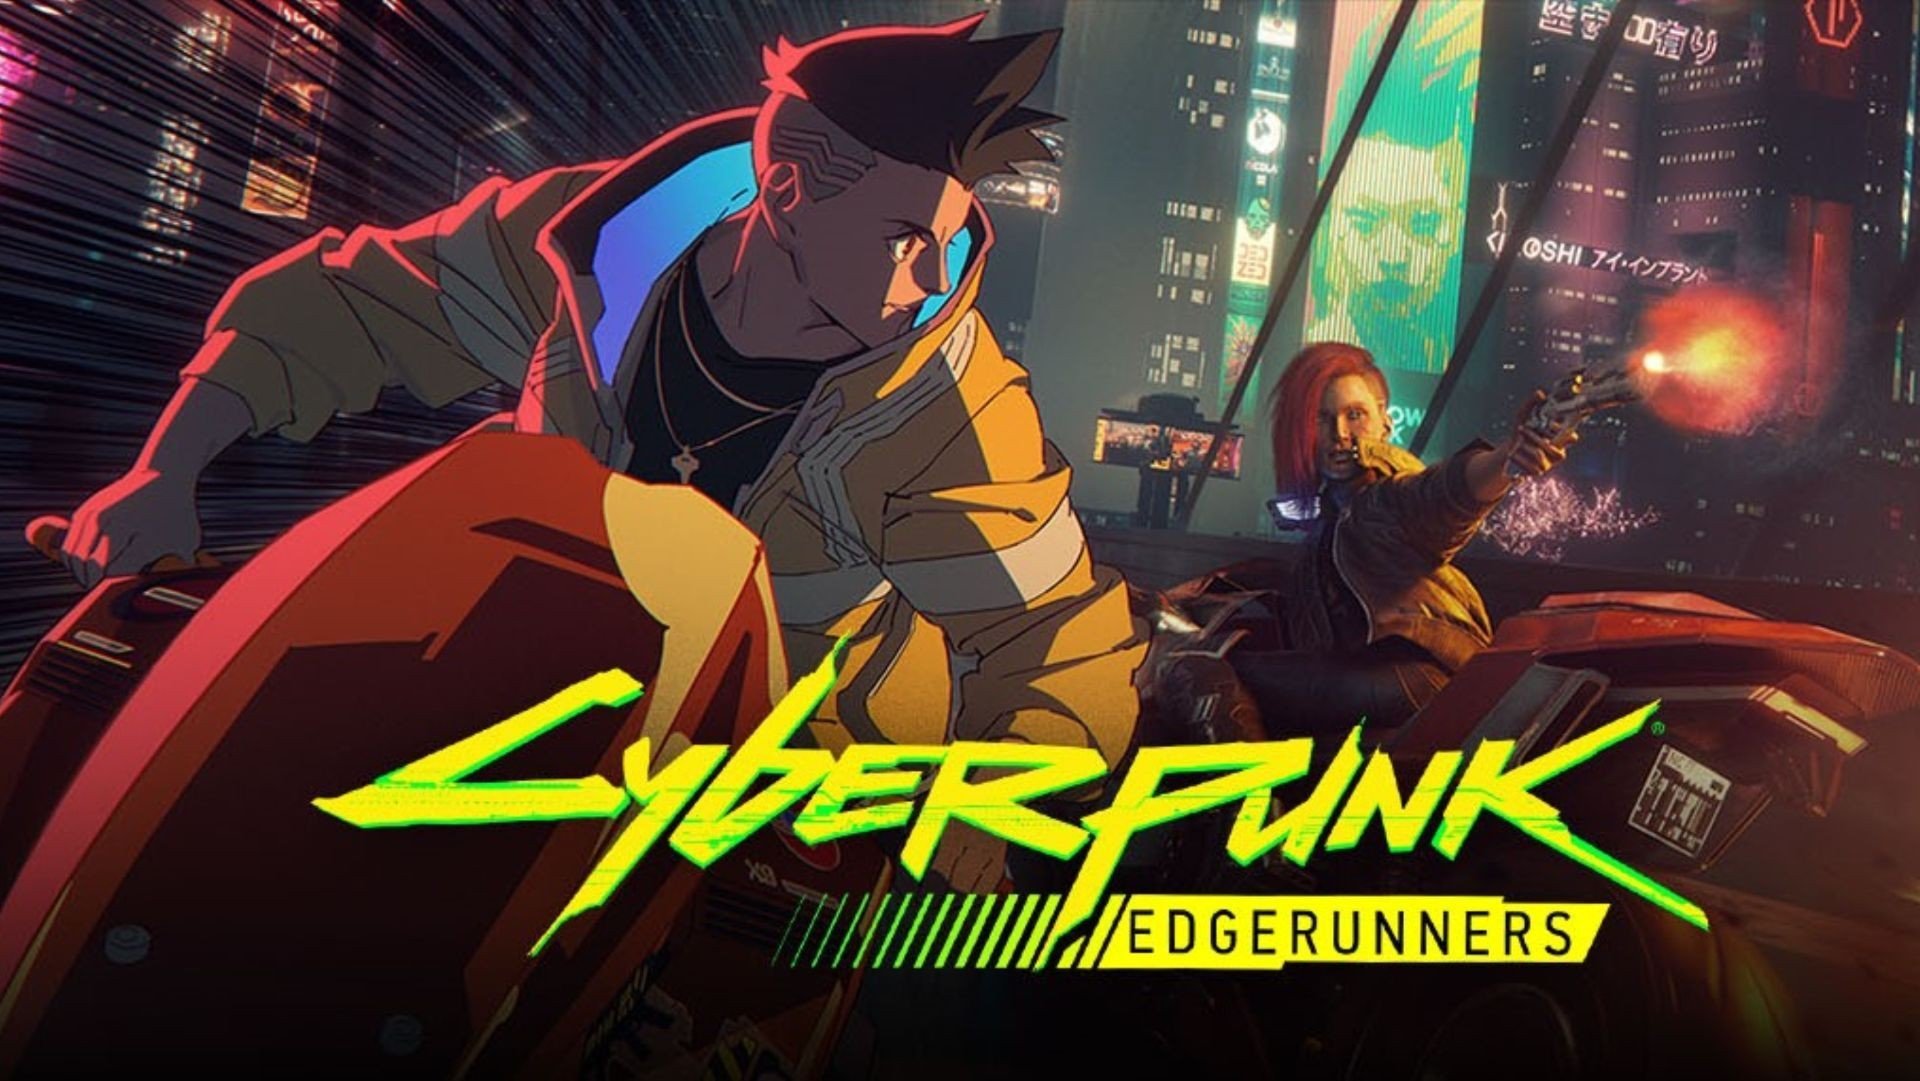 Cyberpunk edgerunners eng dub фото 17